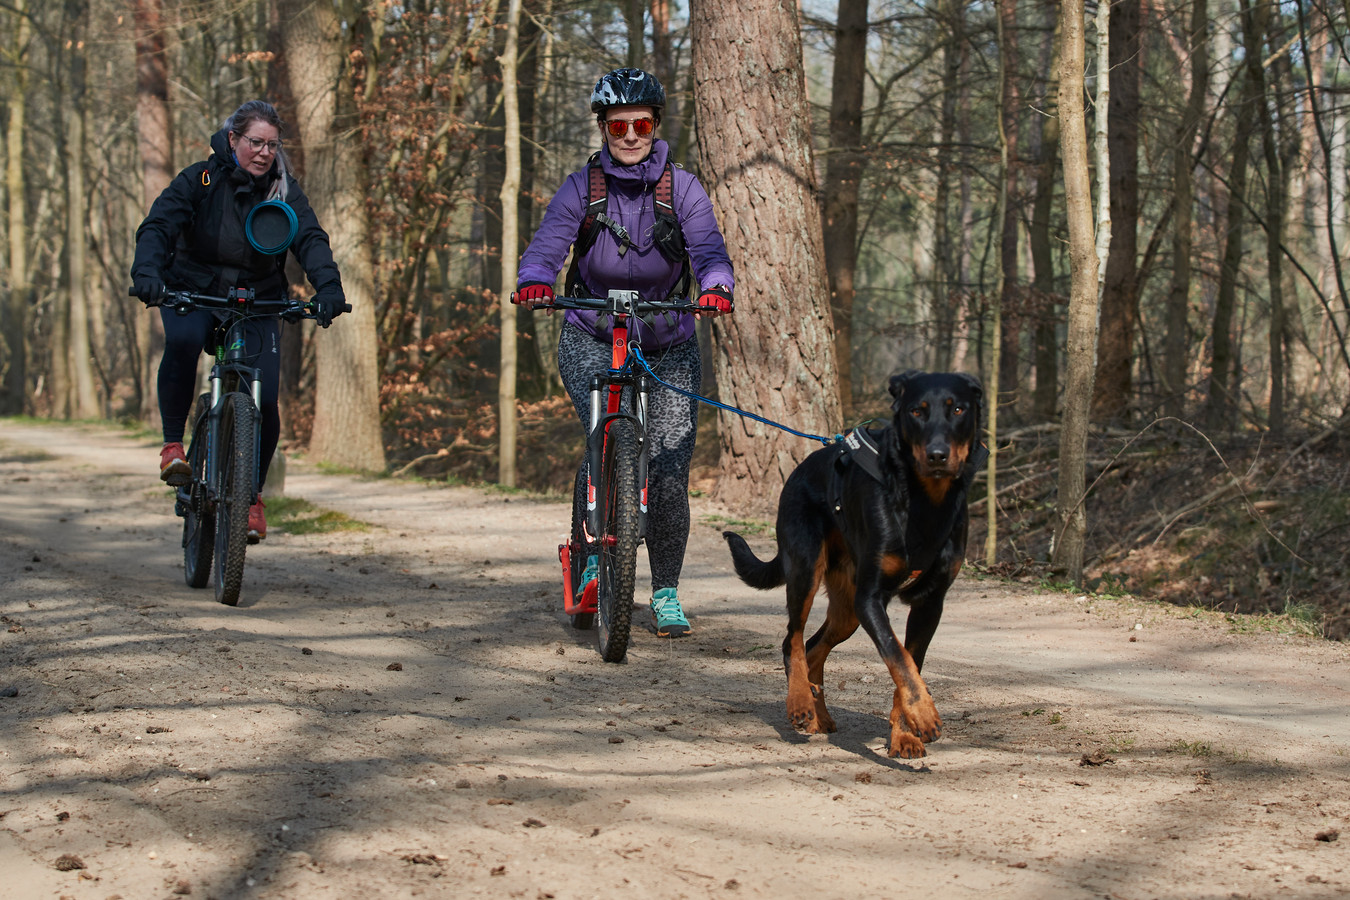 Steppen met je hond door het bos? Dat kan: je hebt toestemming van de dierenarts nodig' Foto | destentor.nl